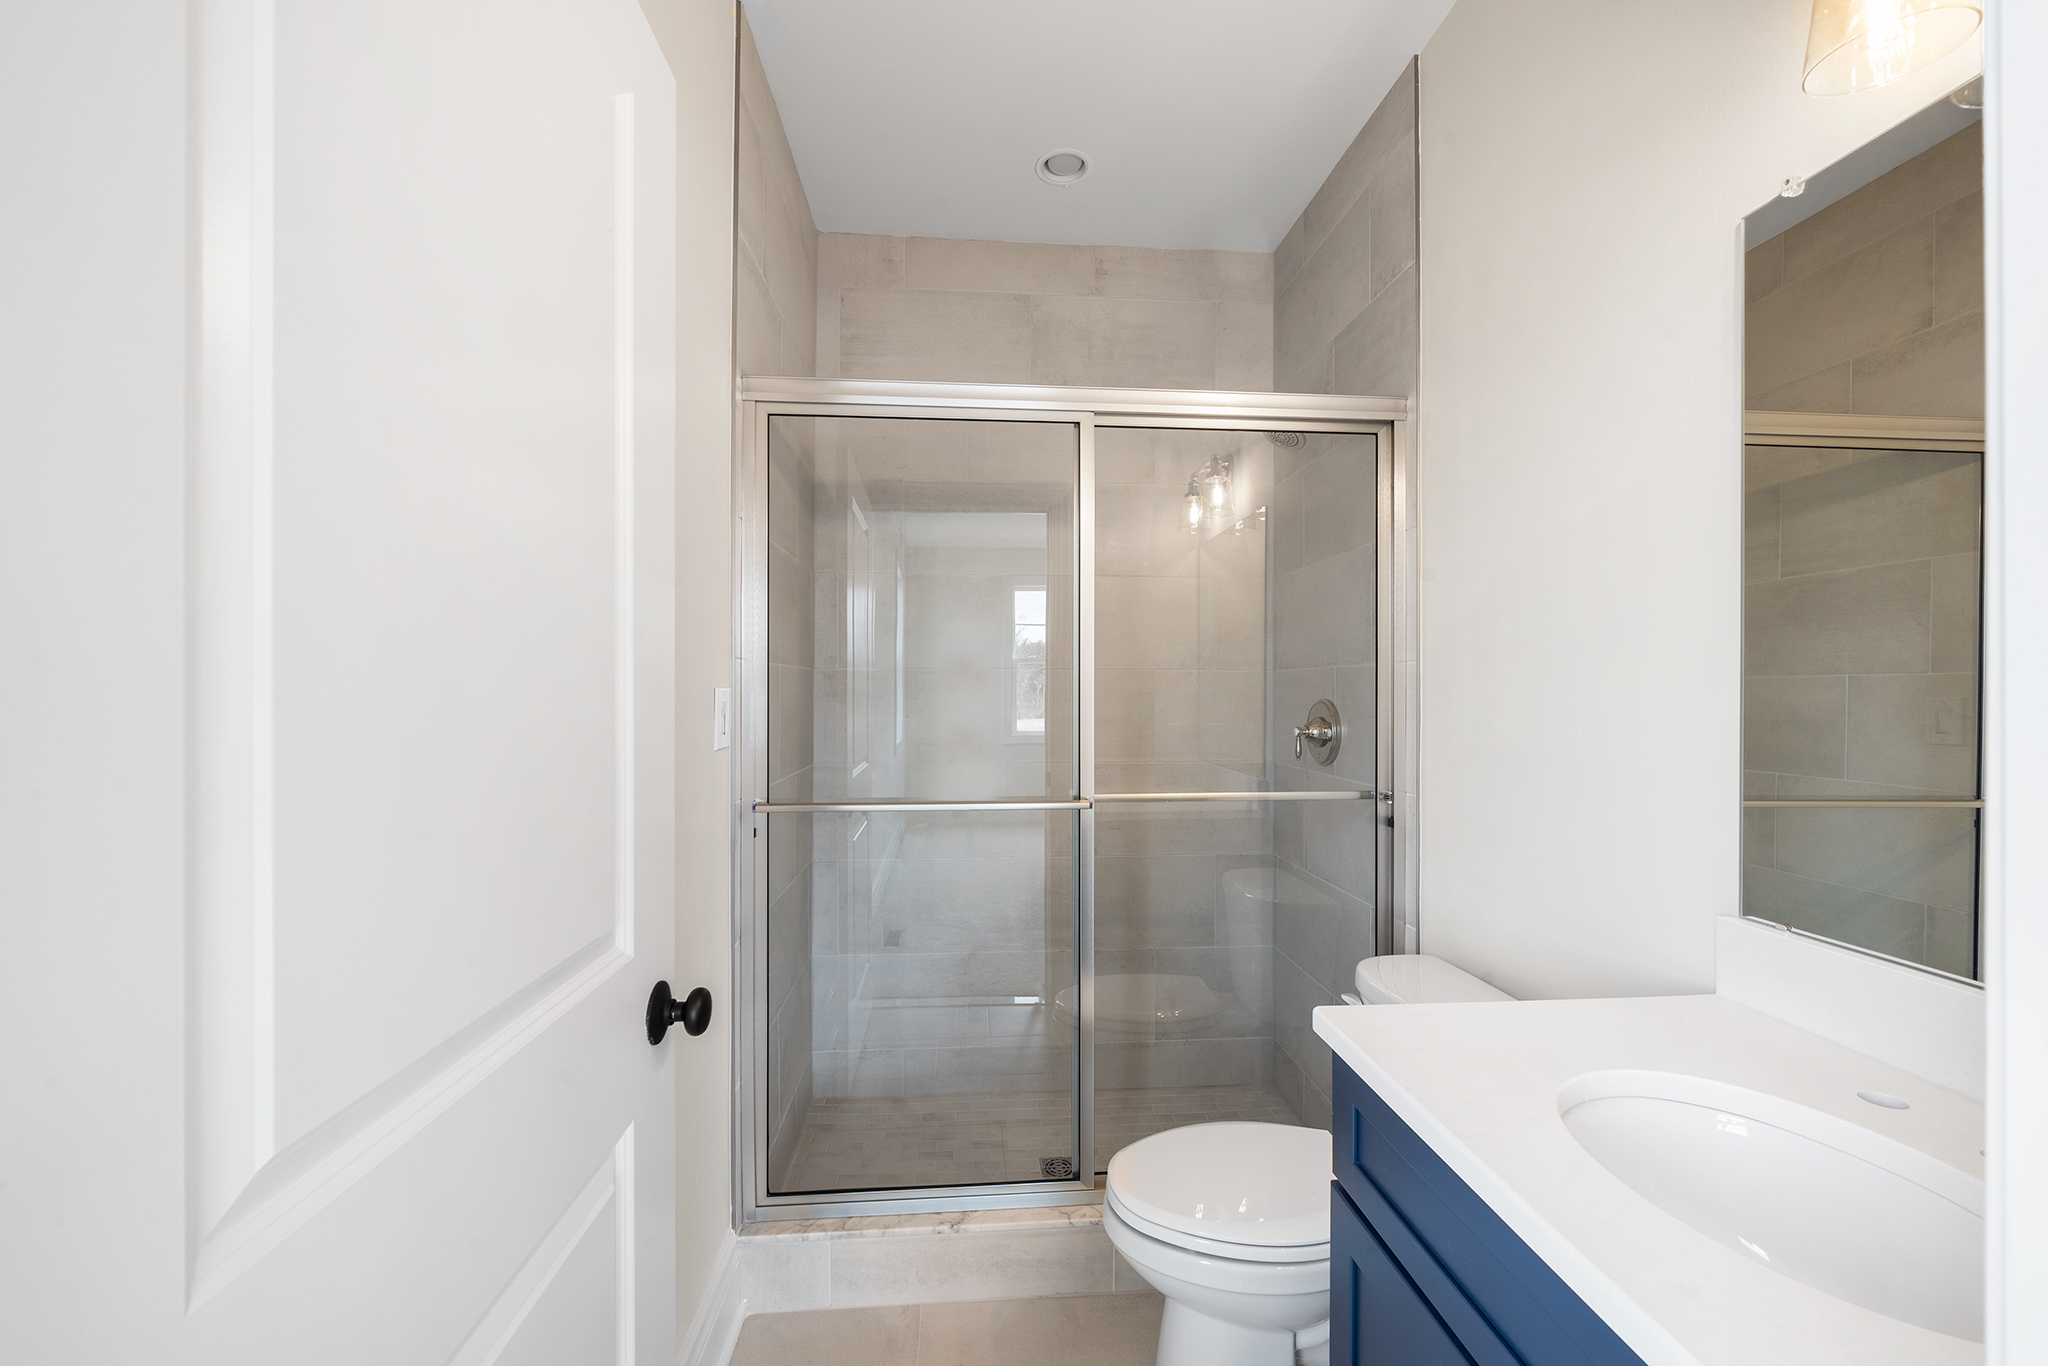 Bathroom Designs Home Building Services